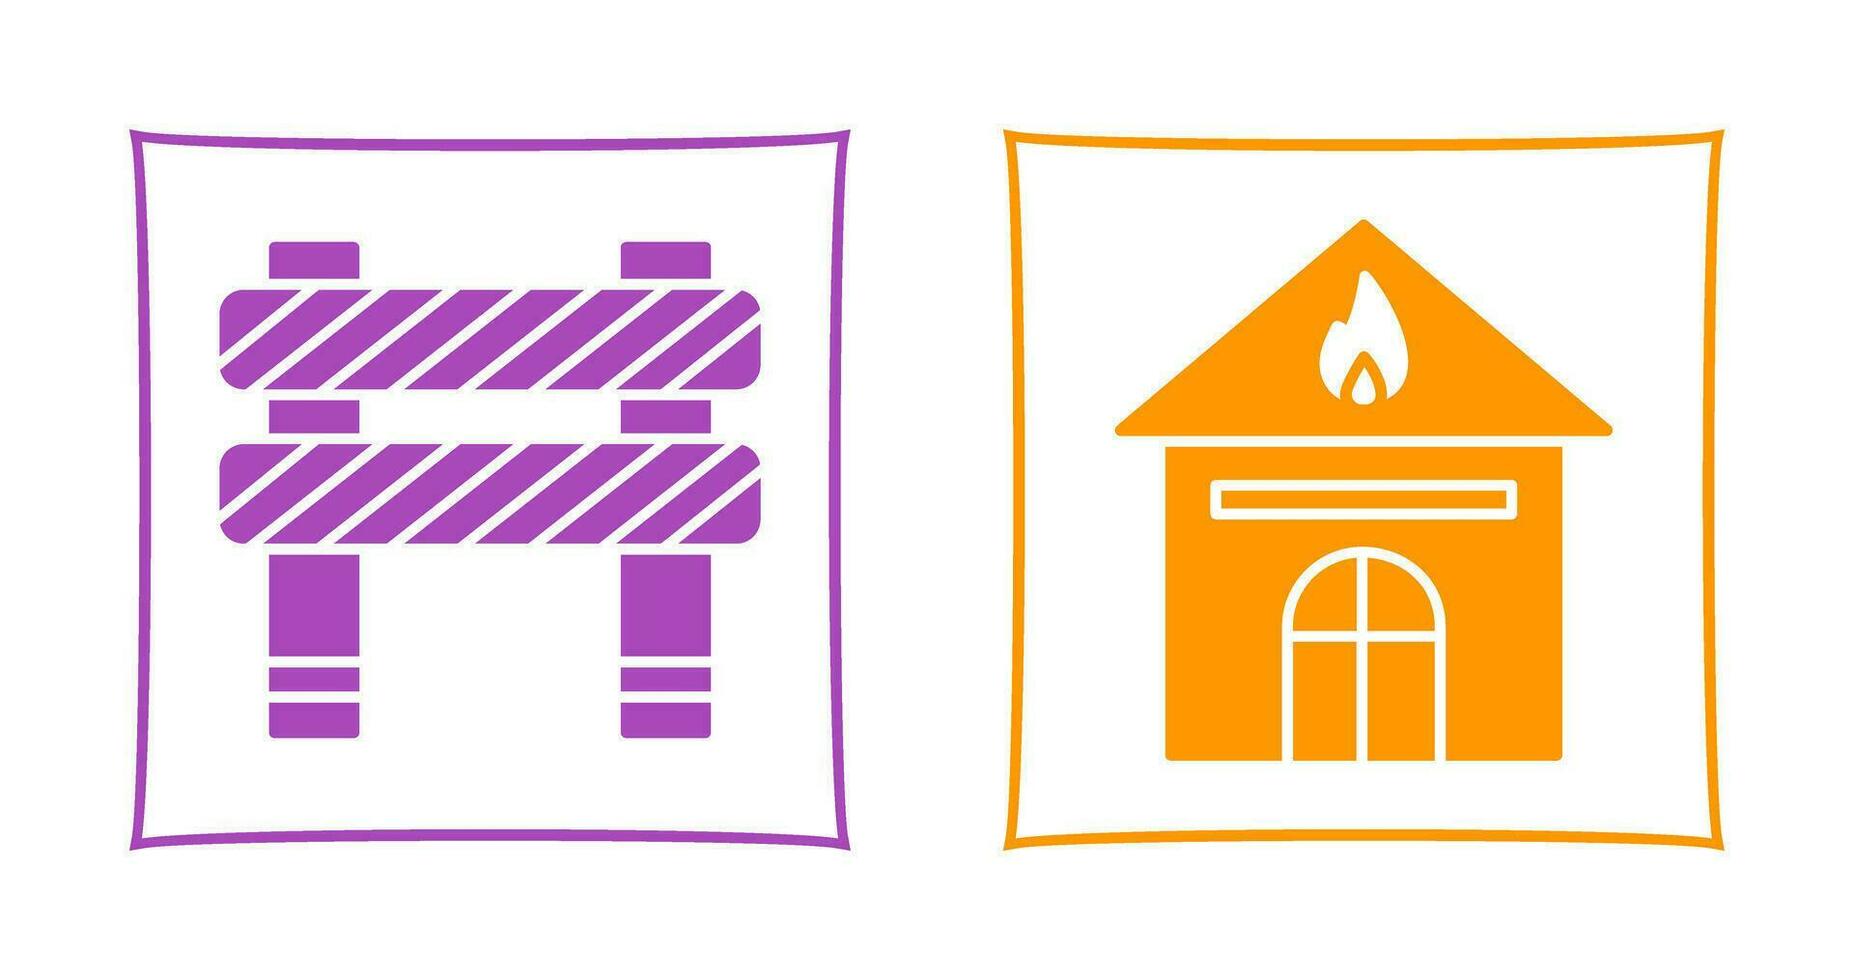 Barriere und Haus auf Feuer Symbol vektor